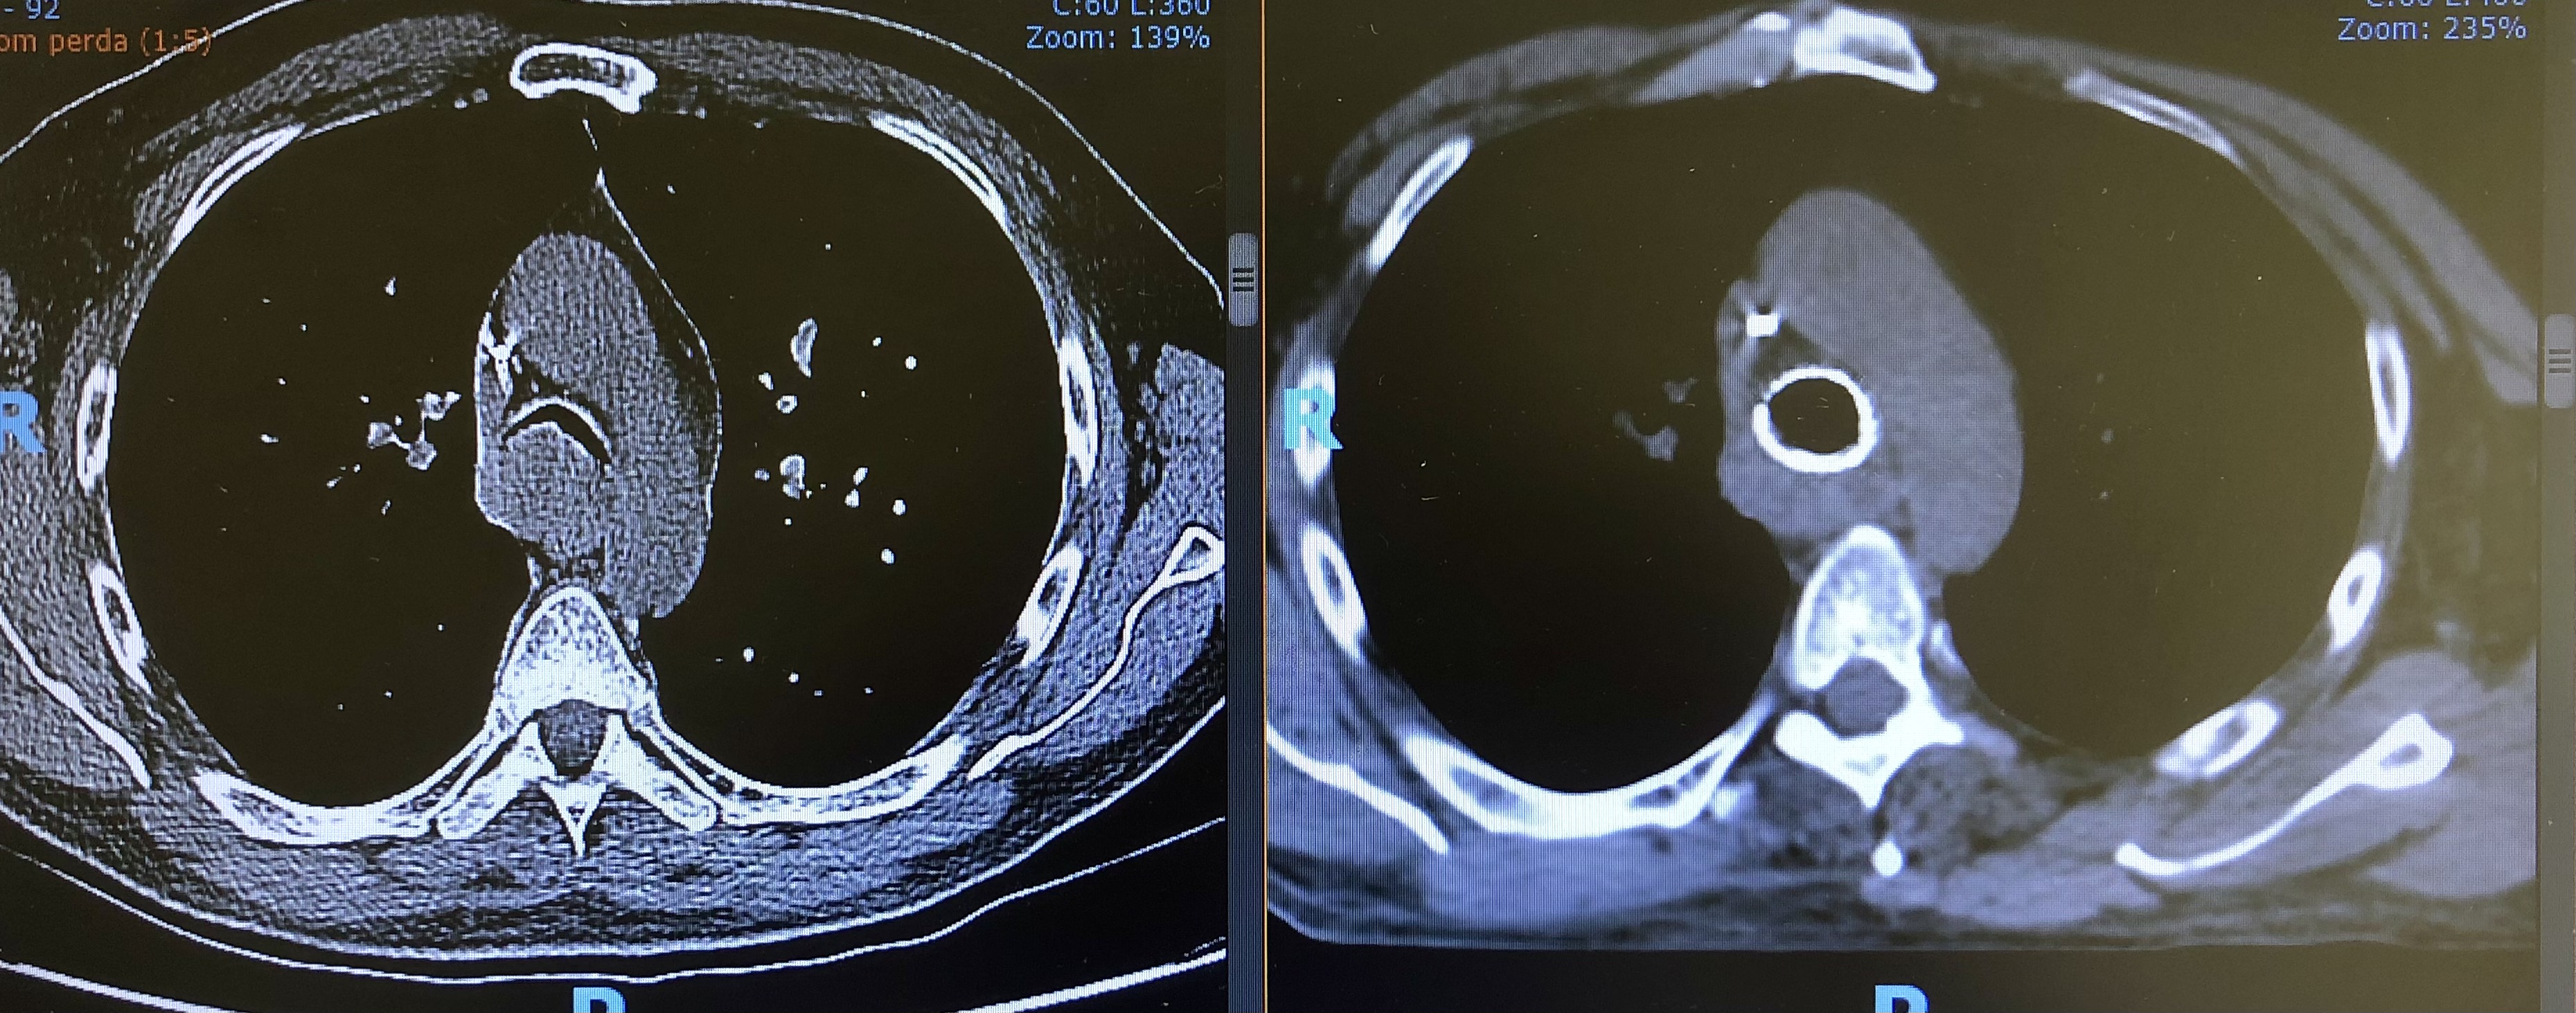 A imagem de tomografia à esquerda mostra que a traqueia do paciente estava quase fechada. A imagem à direita mostra a traqueia aberta após colocar uma prótese em um procedimento de broncoscopia intervencionista.